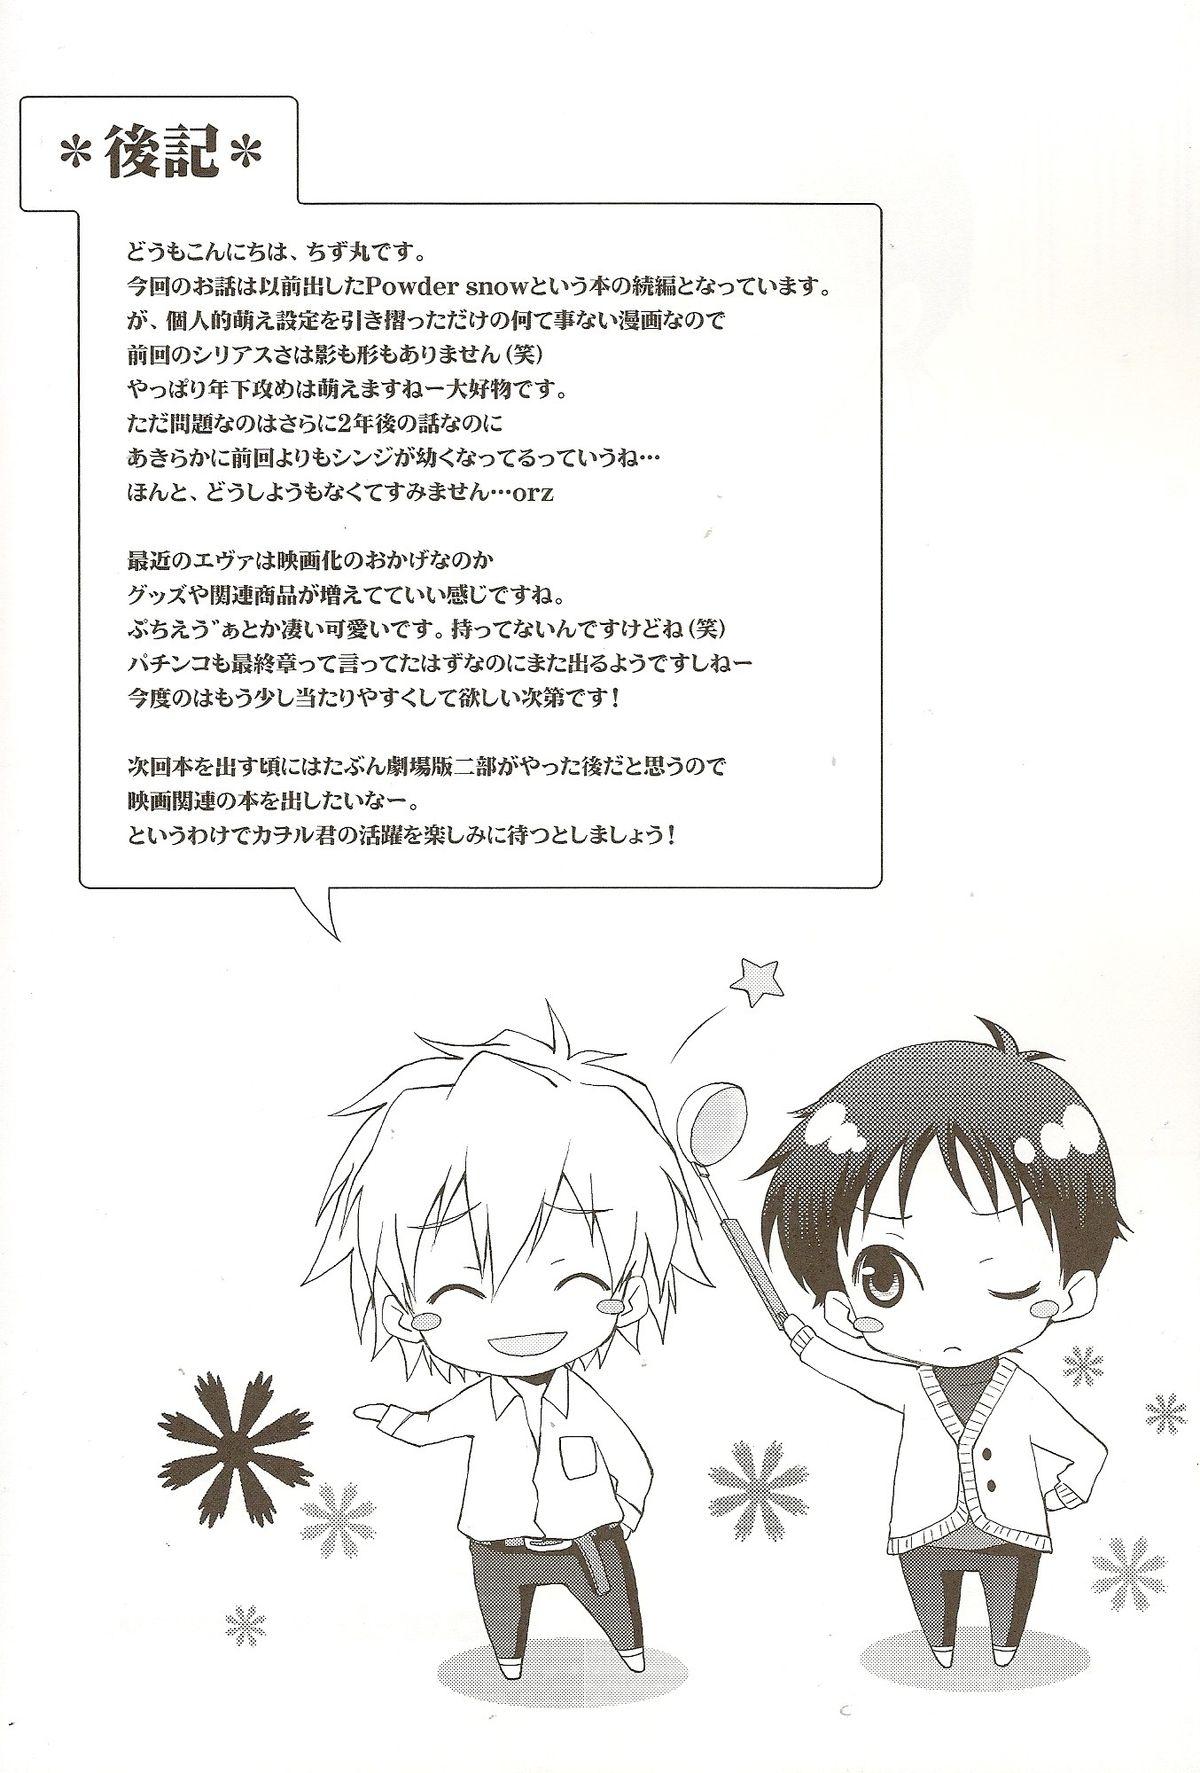 Ex Girlfriend Powder snow... no tsuzuki! - Neon genesis evangelion Putita - Page 33